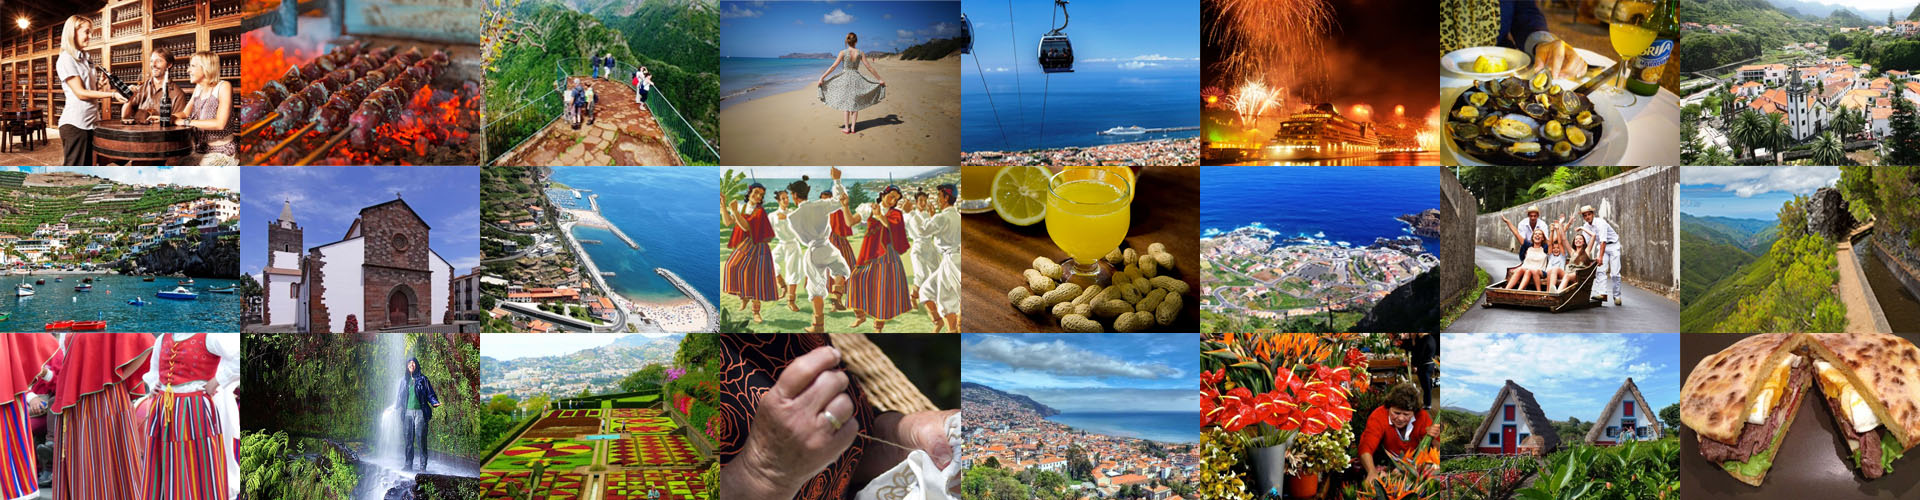 guia madeira - Fatos sobre a história da Ilha da Madeira, cultura, localização, gastronomia, vinho, natureza, levadas, guia